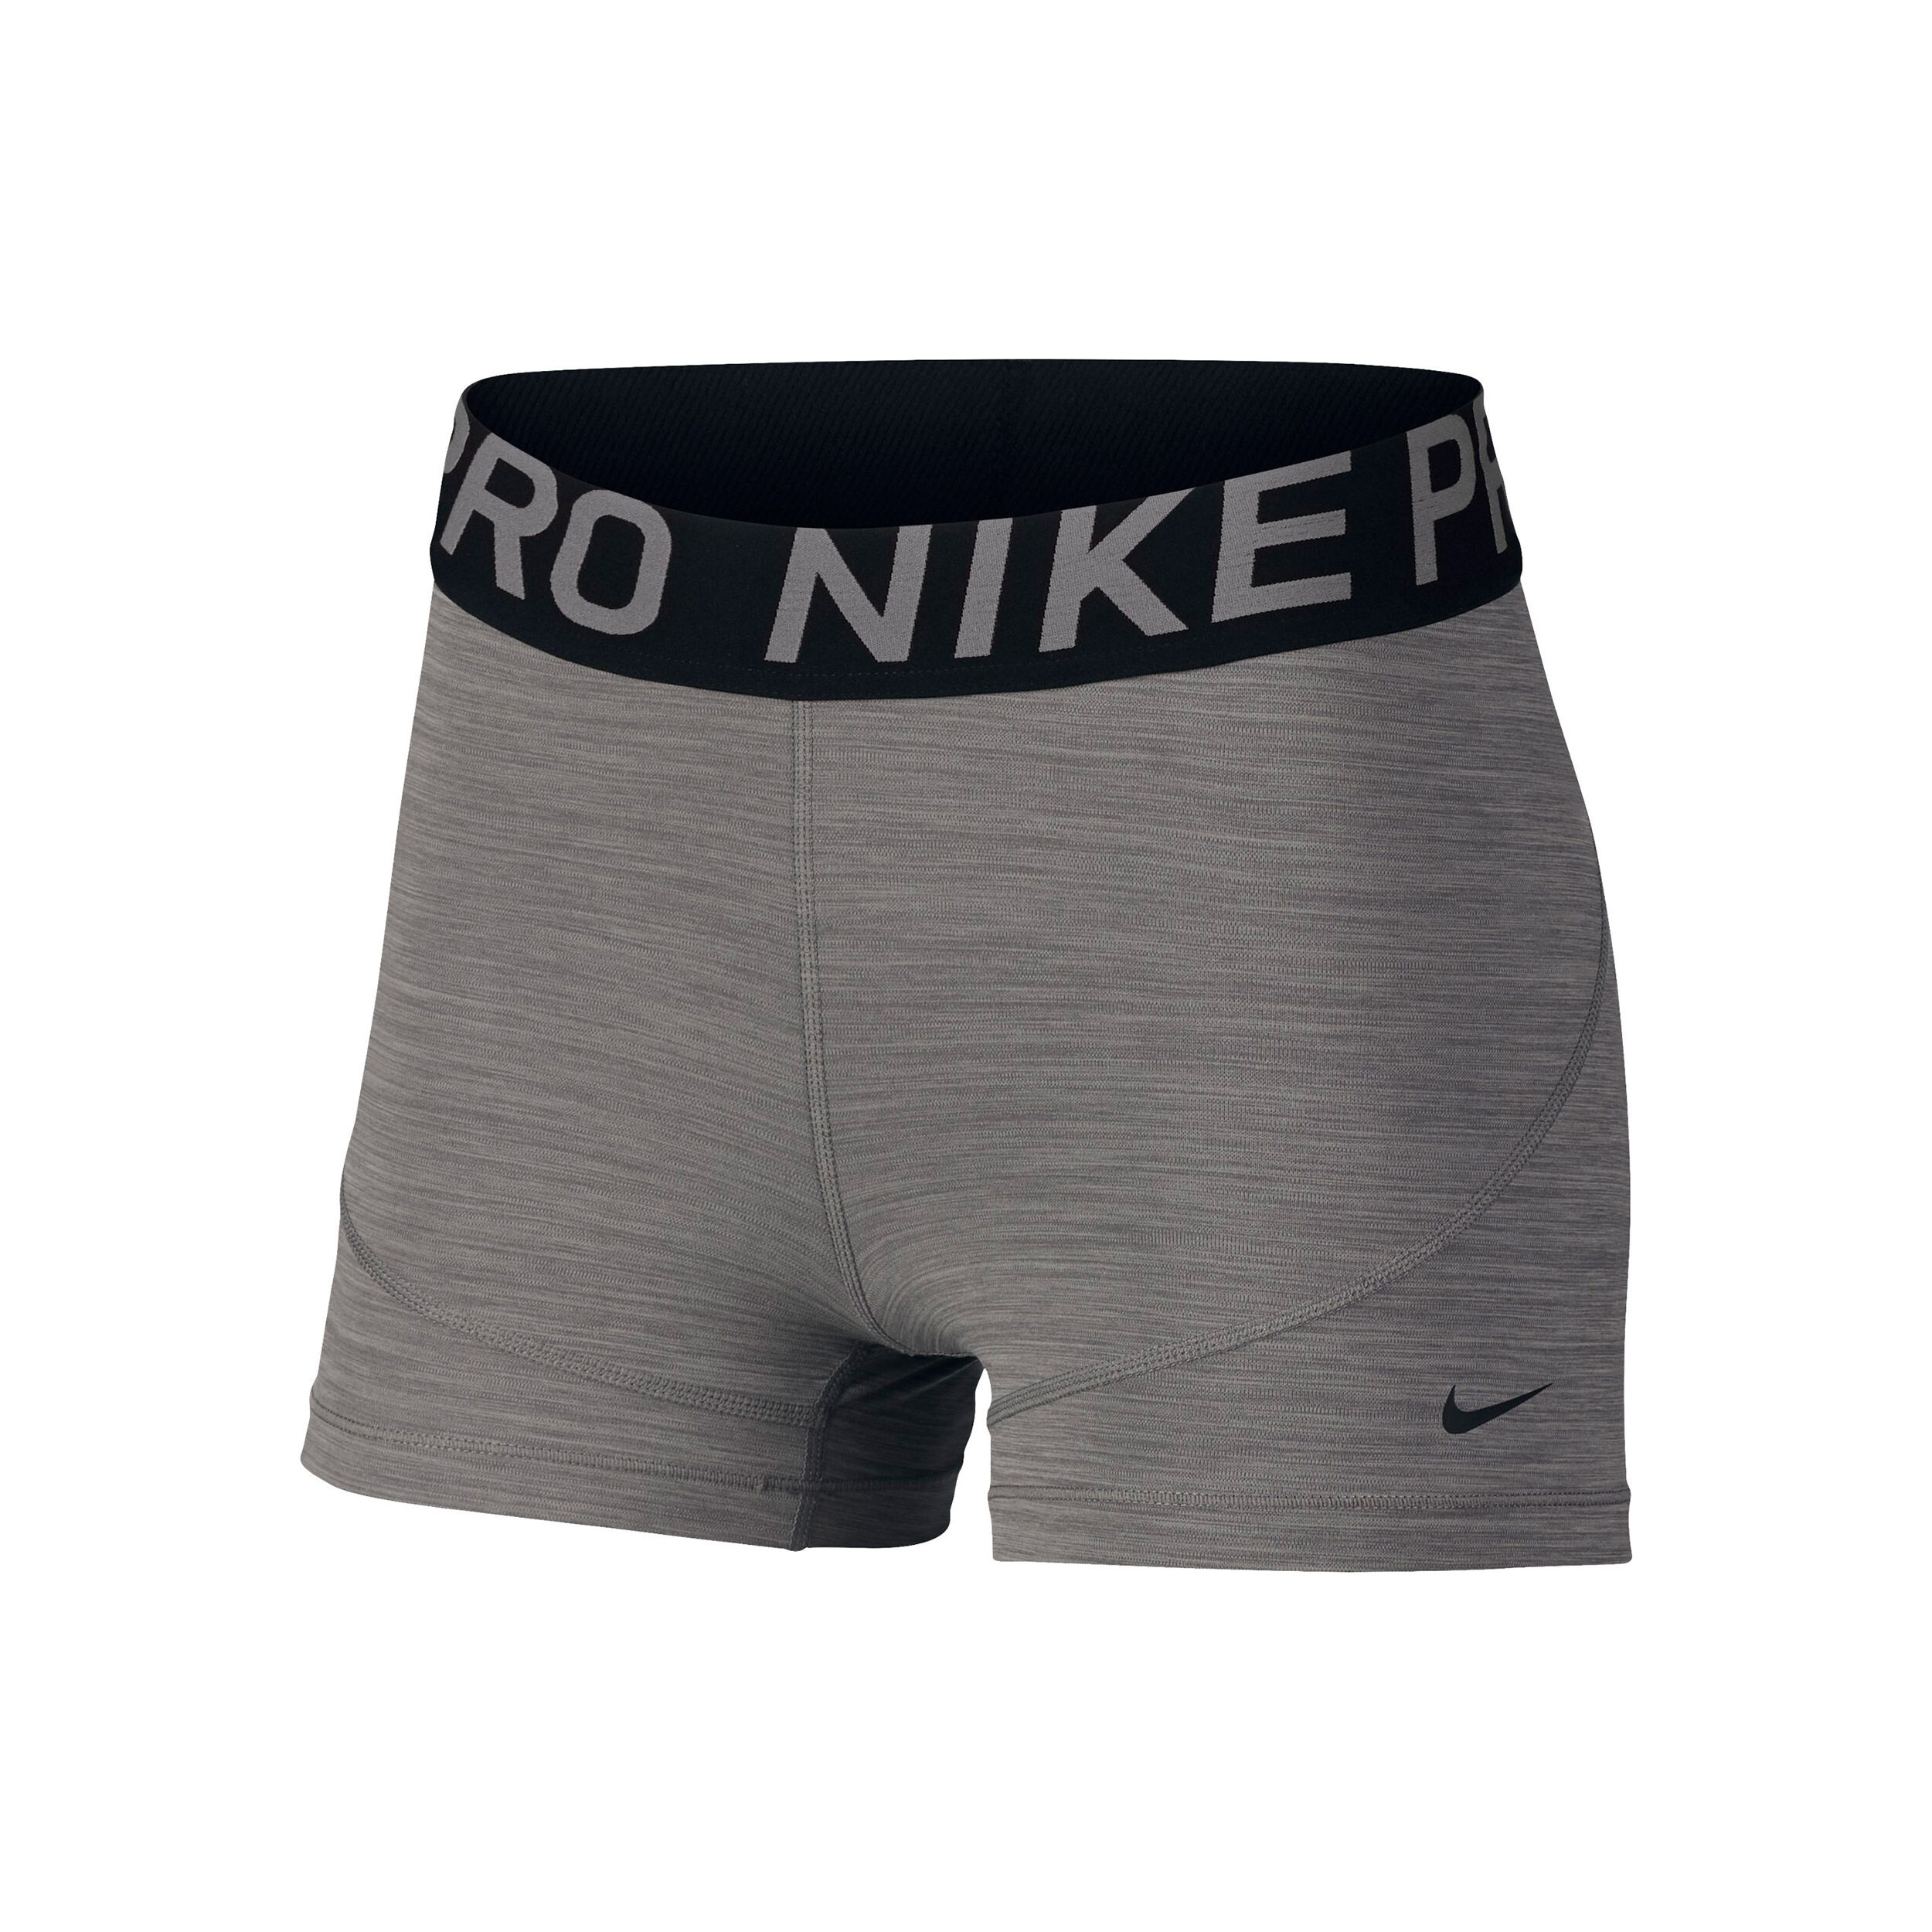 nike pro shorts women grey